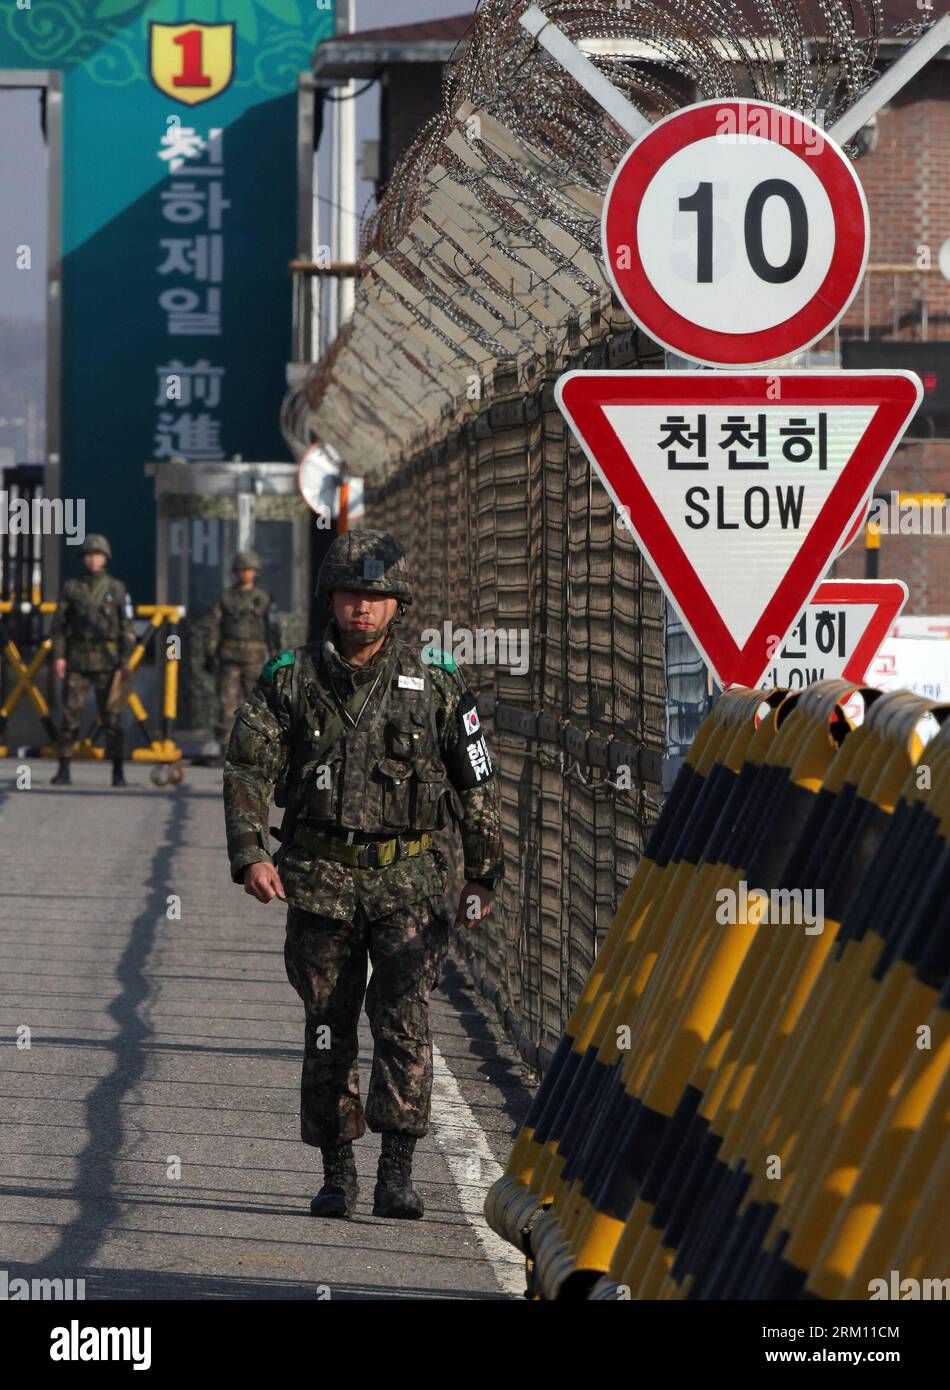 Bildnummer: 59492263 Datum: 10.04.2013 Copyright: imago/Xinhua (130410) -- PAJU, 10. April 2013 (Xinhua) -- südkoreanische Soldaten stehen auf der Vereinigungsbrücke in der Nähe des Büros für Zoll, Einwanderung und Quarantäne (CIQ) in Paju, Provinz Gyeonggi in Südkorea, 10. April 2013. Südkorea sieht die Warnung der Demokratischen Volksrepublik Korea (DVRK) an Ausländer in Seoul, Evakuierung als psychologische Kriegsführung zu betrachten, sagte das Präsidialbüro am Dienstag. (Xinhua/Park Jin-hee)(dzl) SÜDKOREA-PAJU-DVRK-GRENZE PUBLICATIONxNOTxINxCHN Politik Grenze Grenzübergang Südkorea Stockfoto